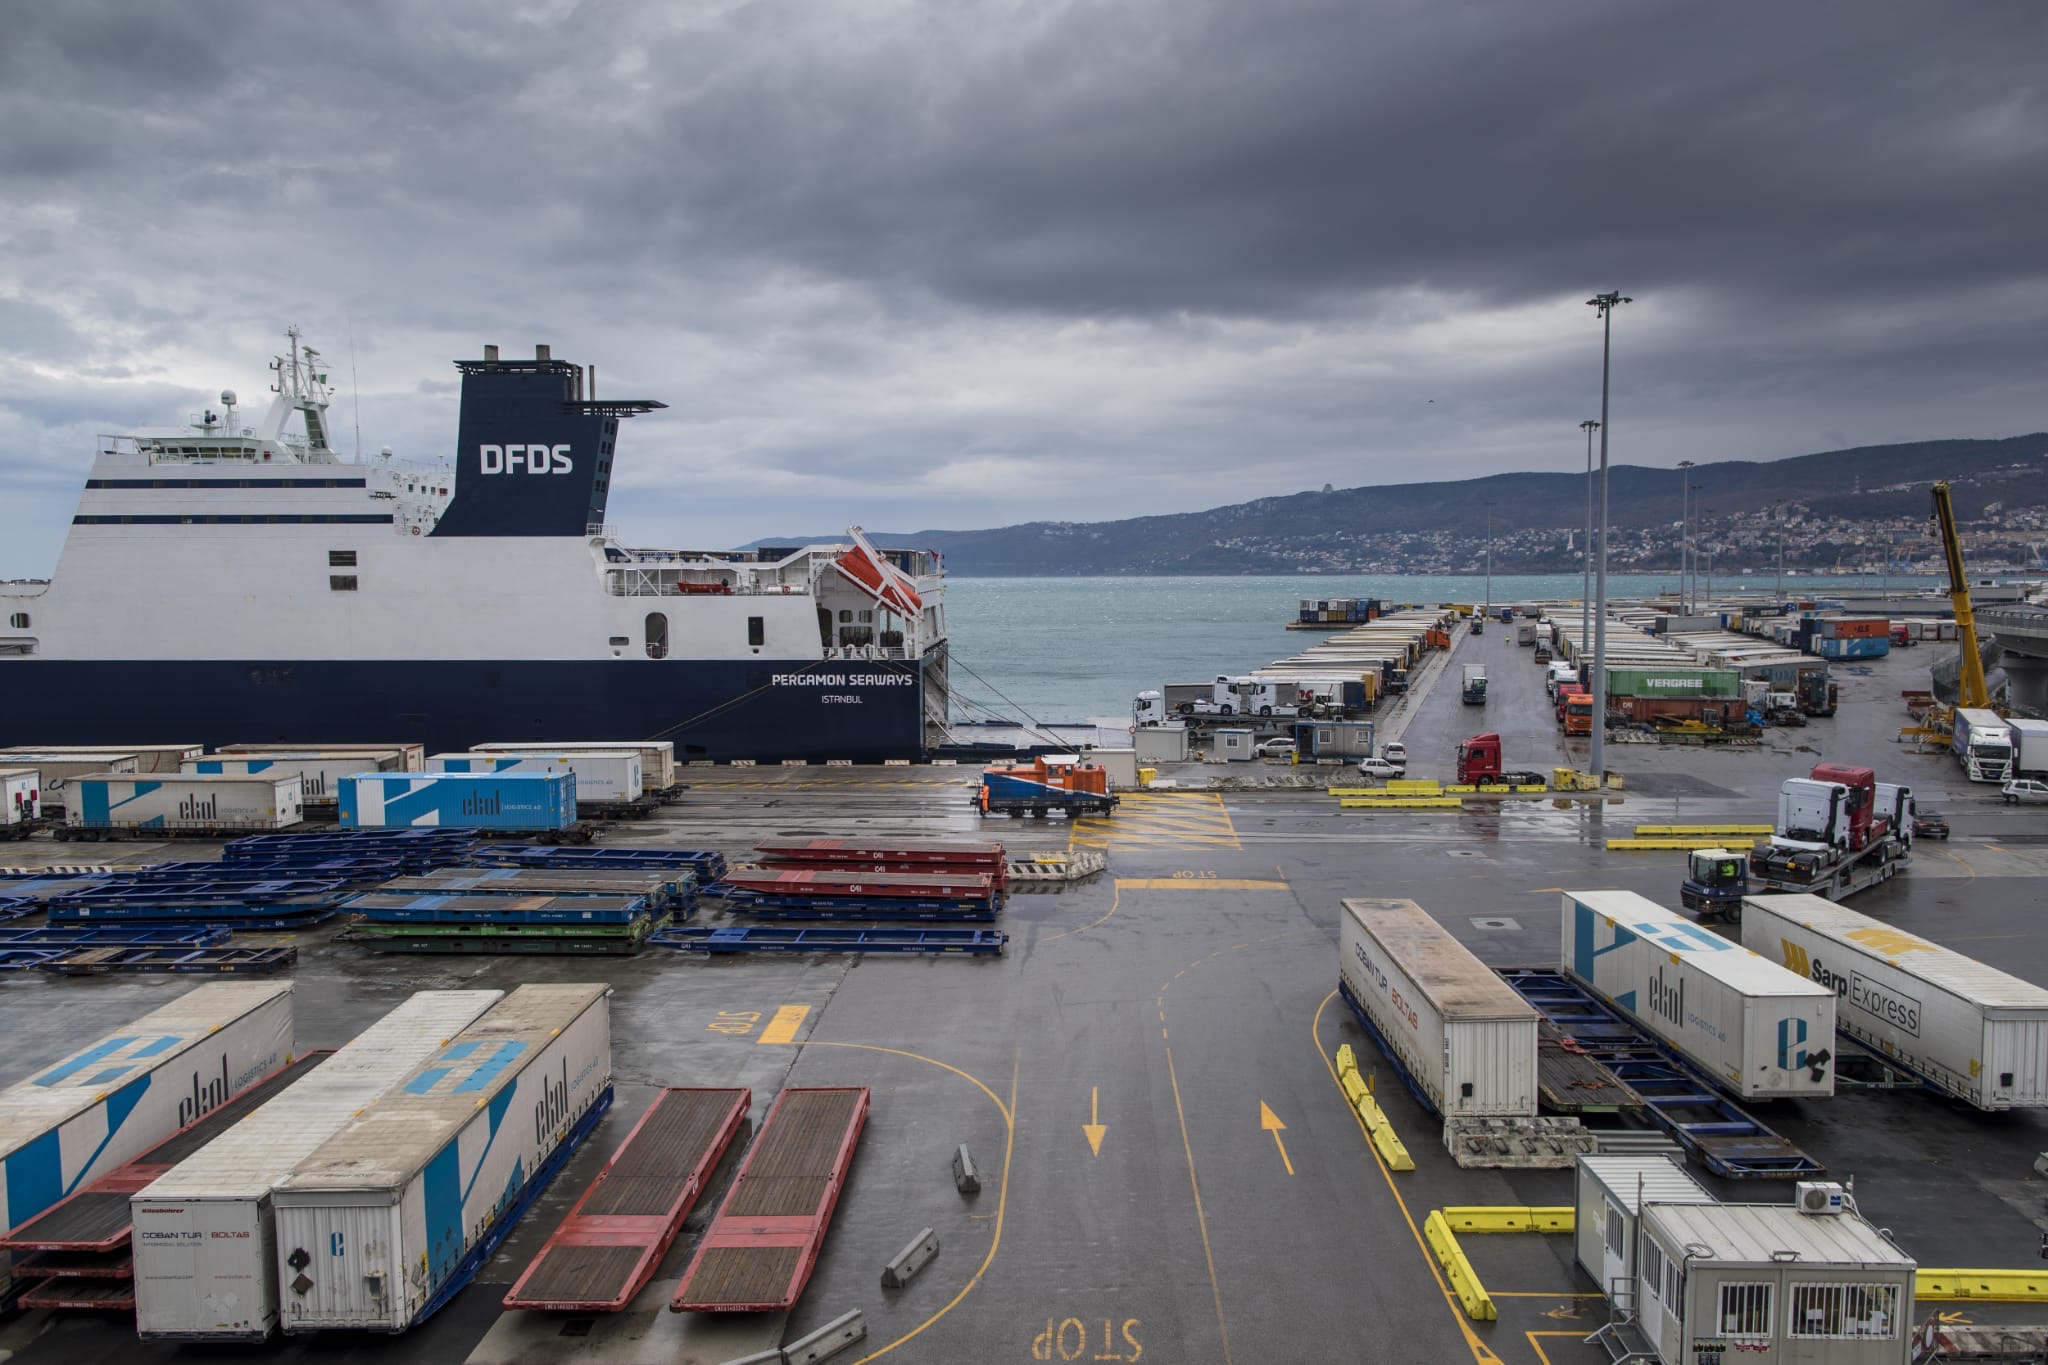 Porto di Trieste: al via progetto banchina estesa ferroviaria verso le aree interne degli interporti